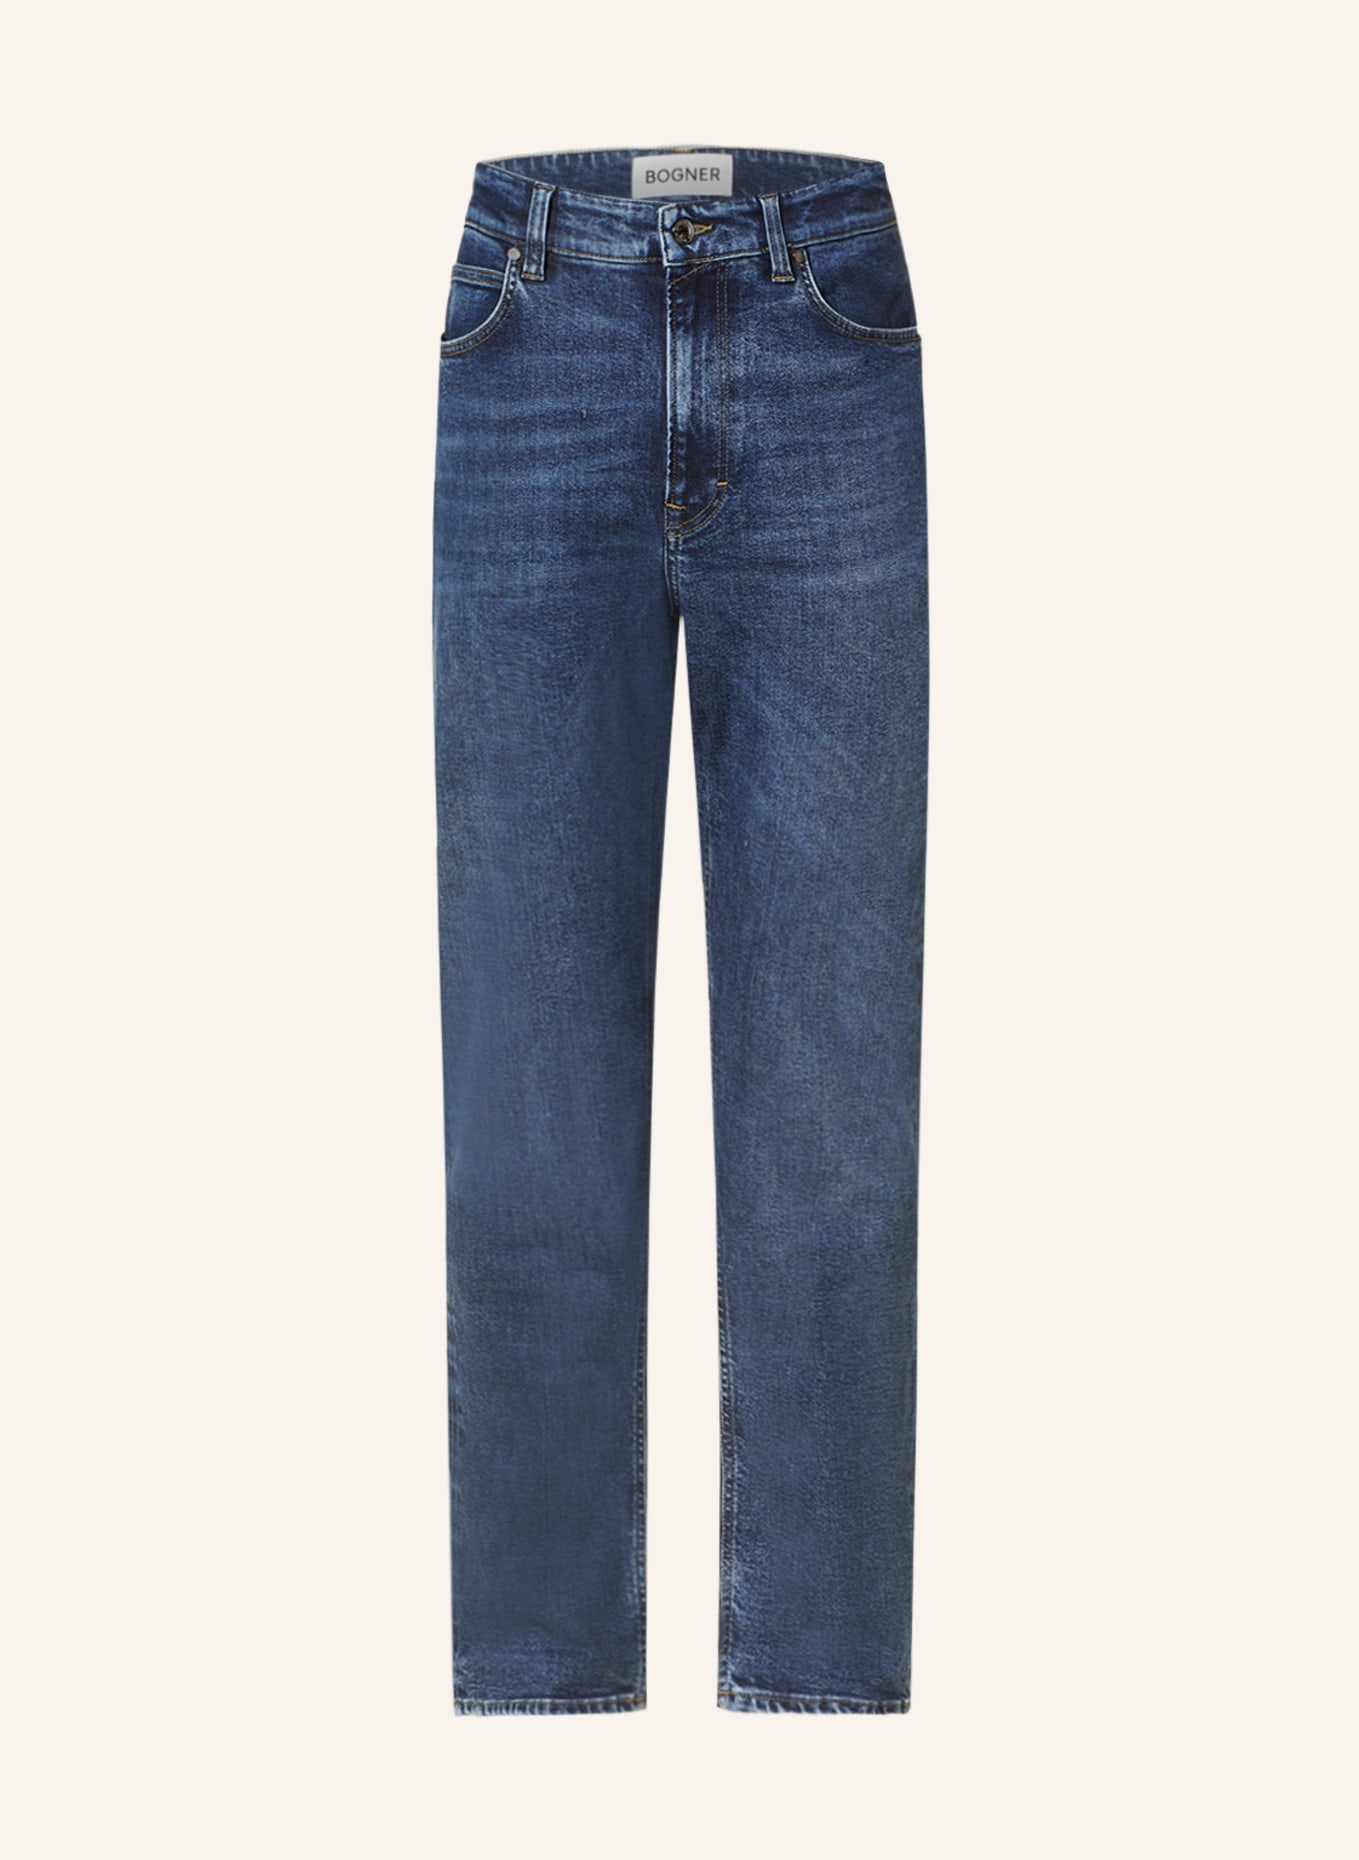 BOGNER Jeans BRIAN tapered fit, Color: 428 428 (Image 1)